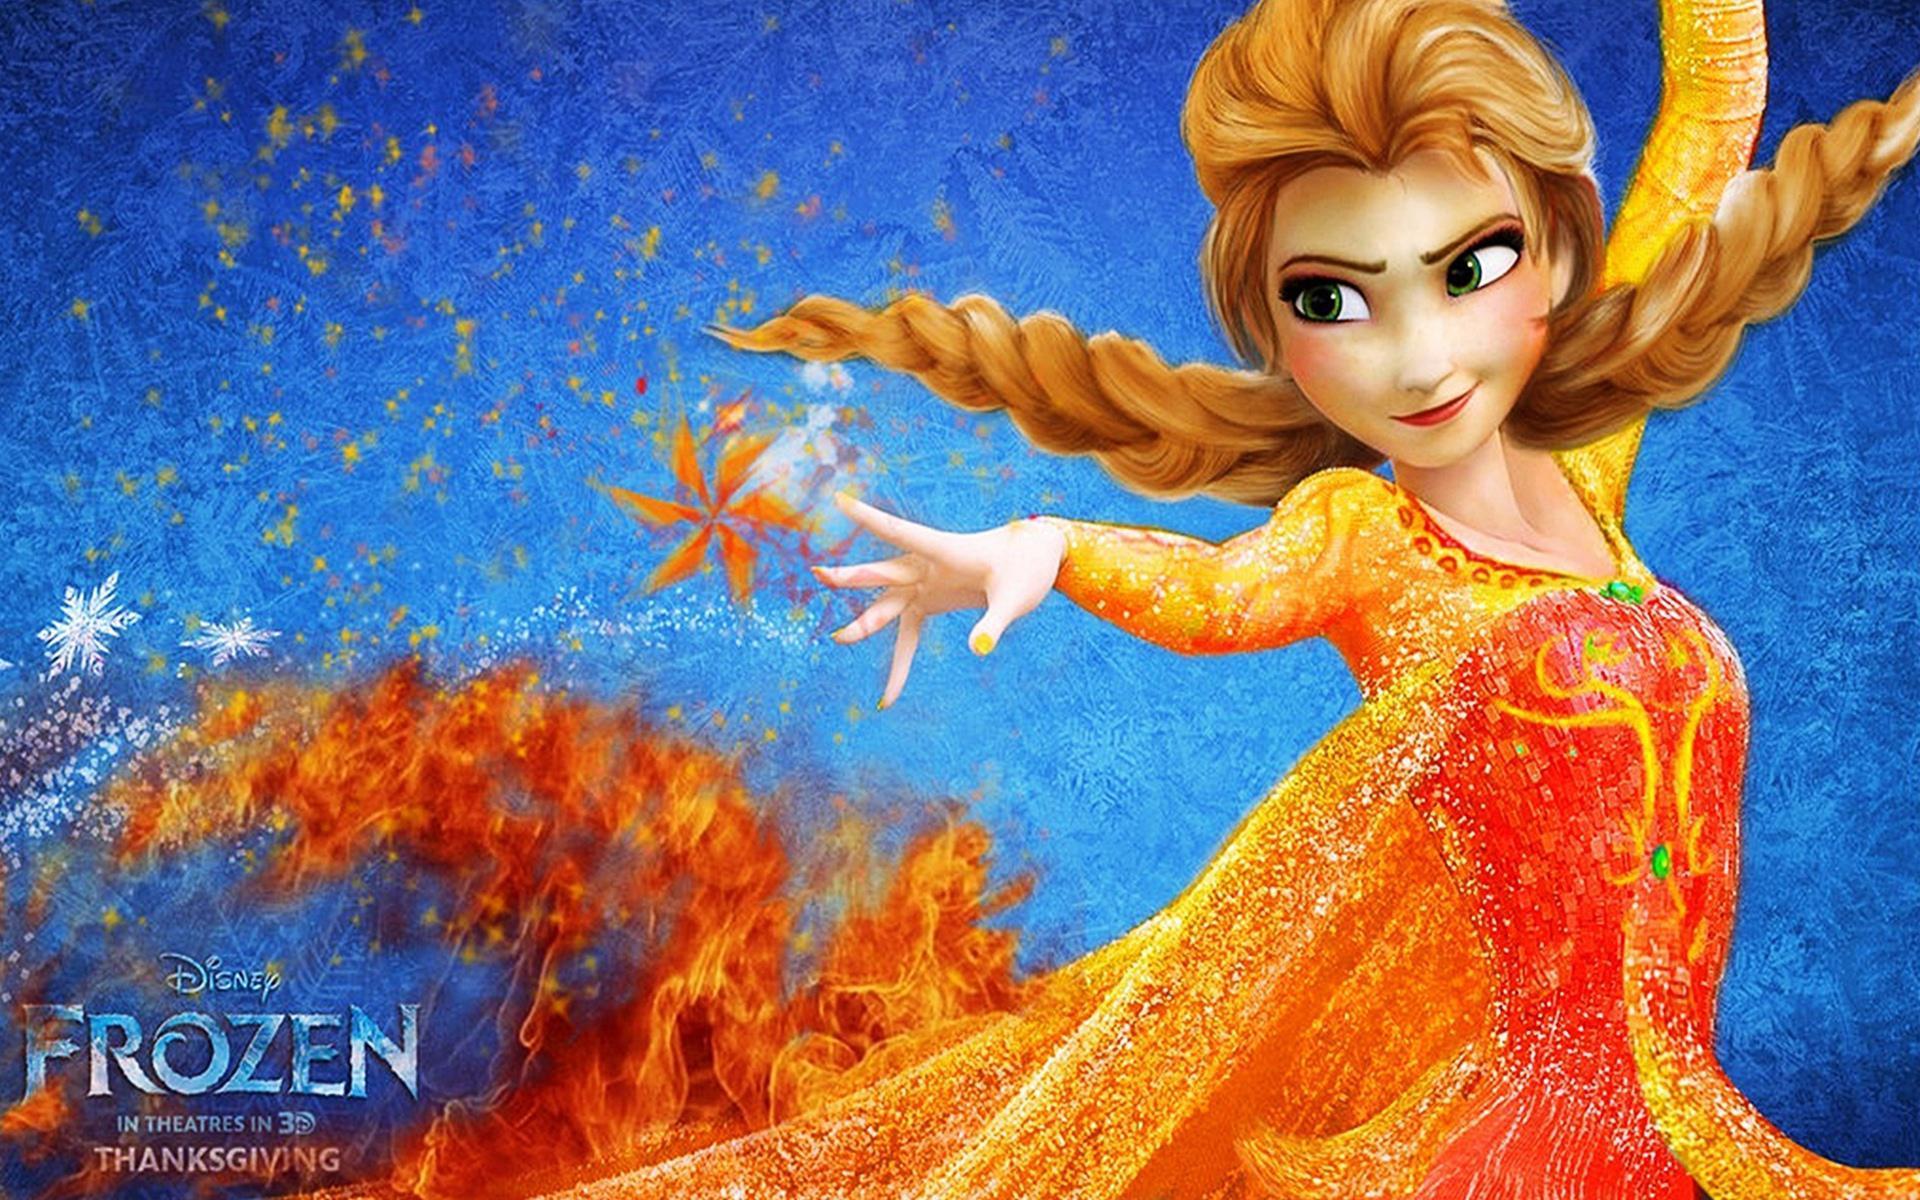 Frozen movie, on fire HD Wallpaper